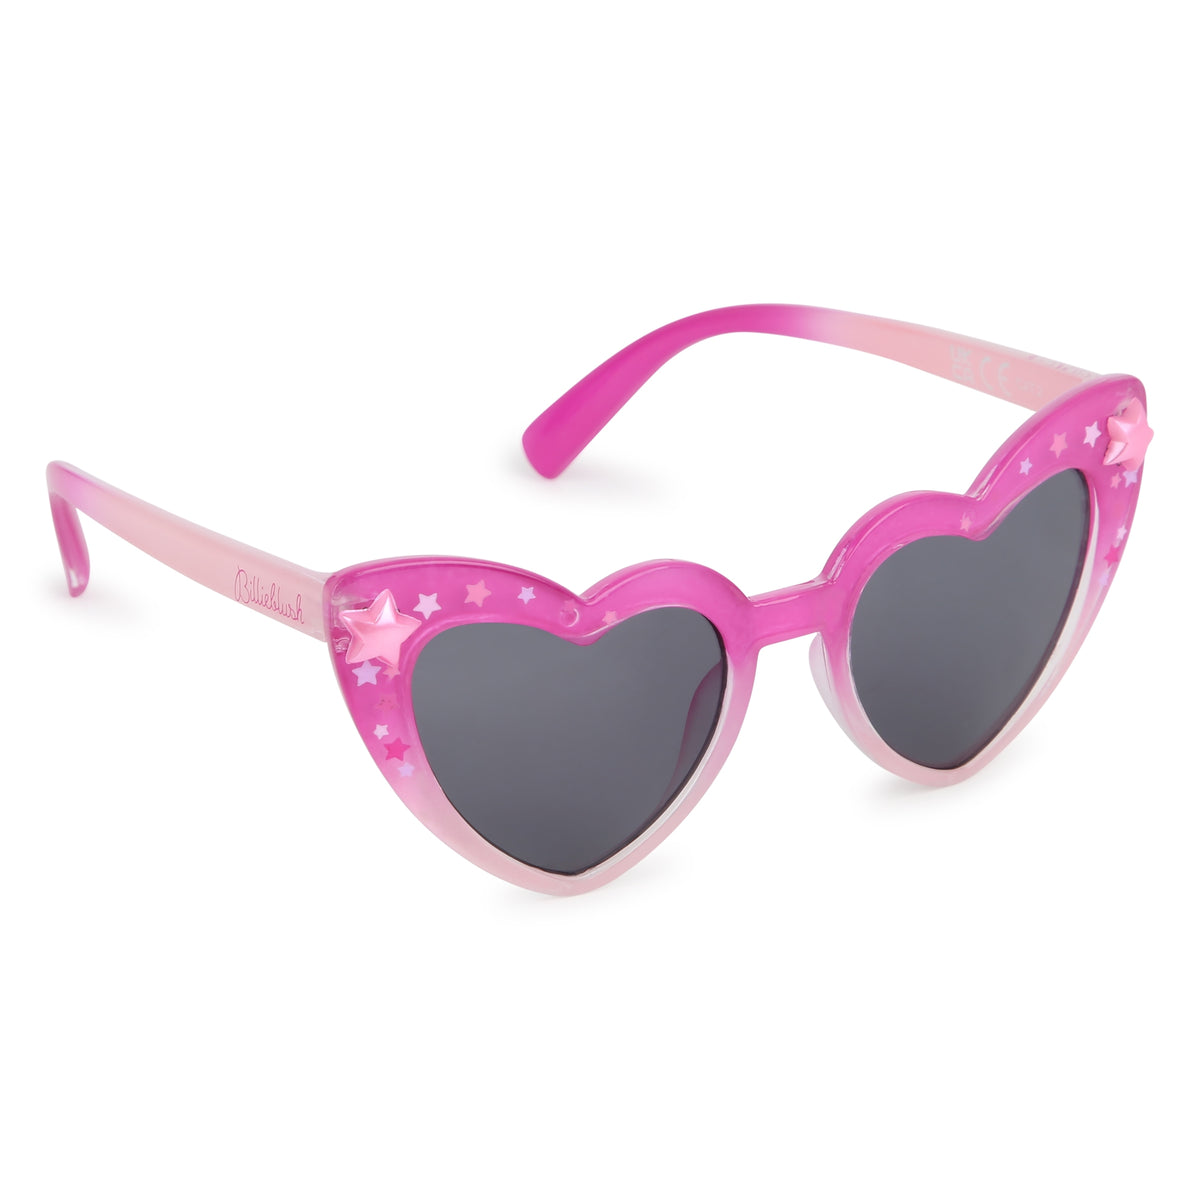 Billieblush Girls Pink Heart Sunglasses